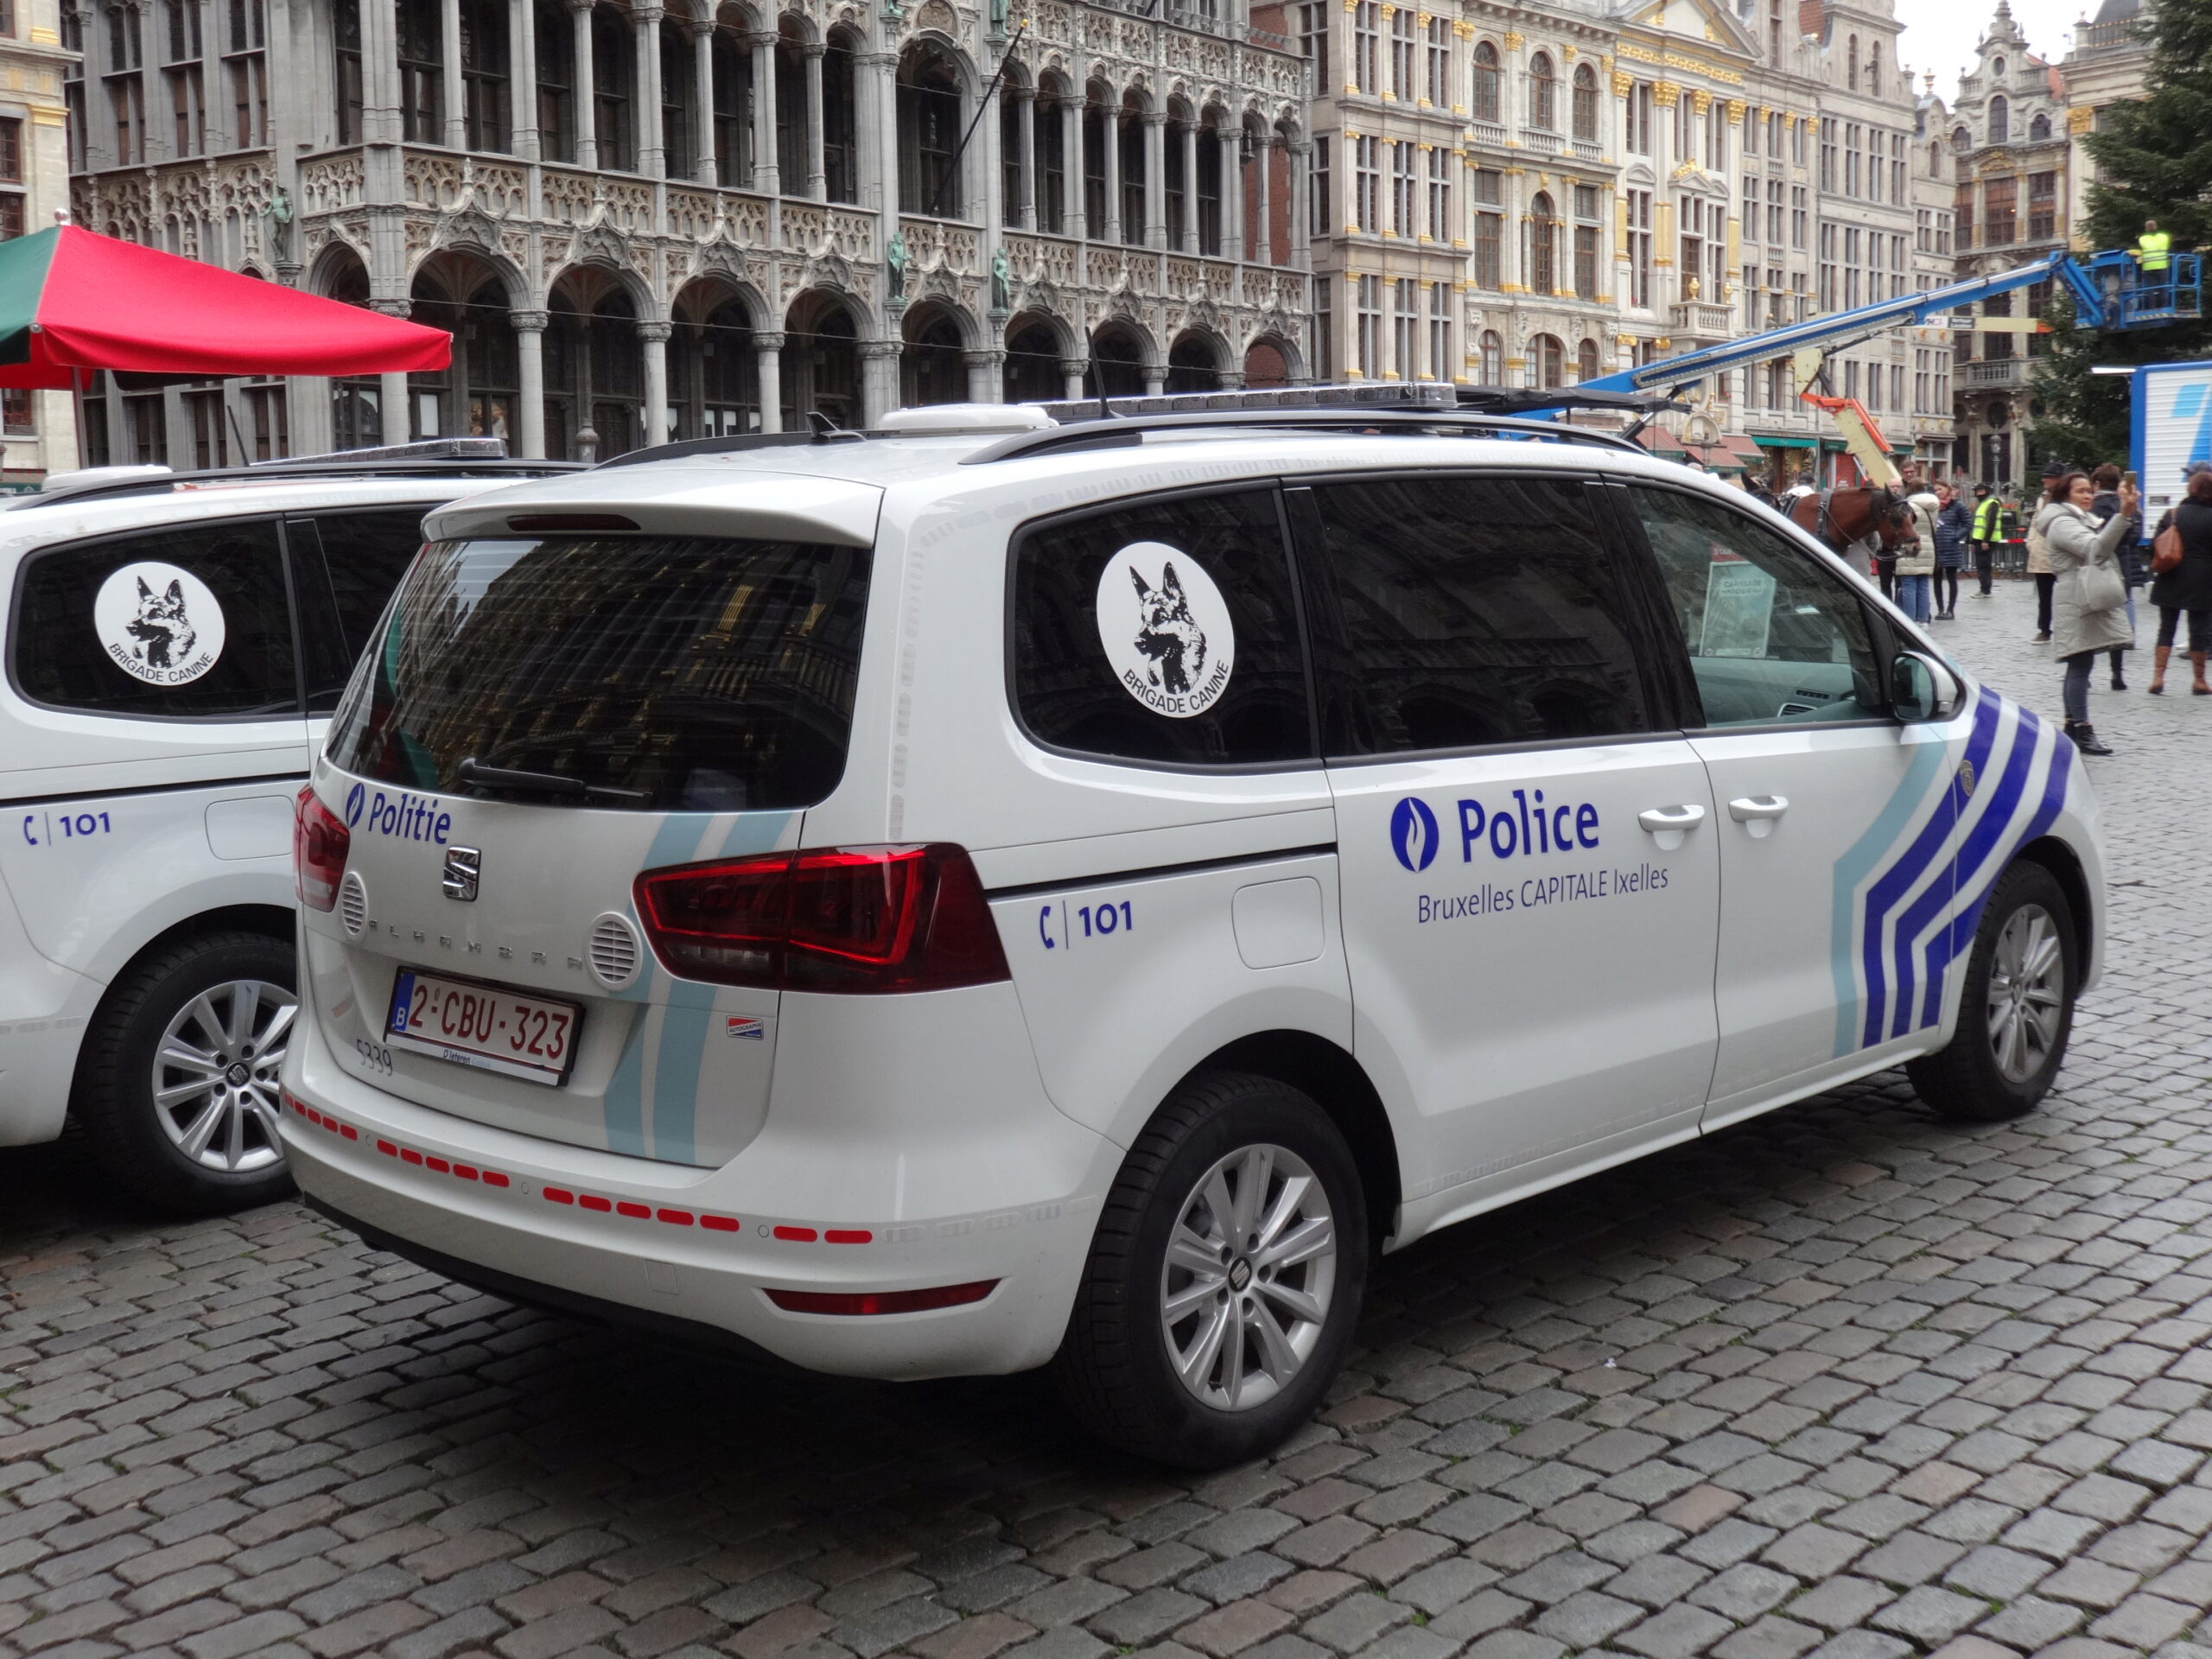 Zone de police Bruxelles Capitale Ixelles (ZP 5339 - PolBru) - Page 4 Alhamb13